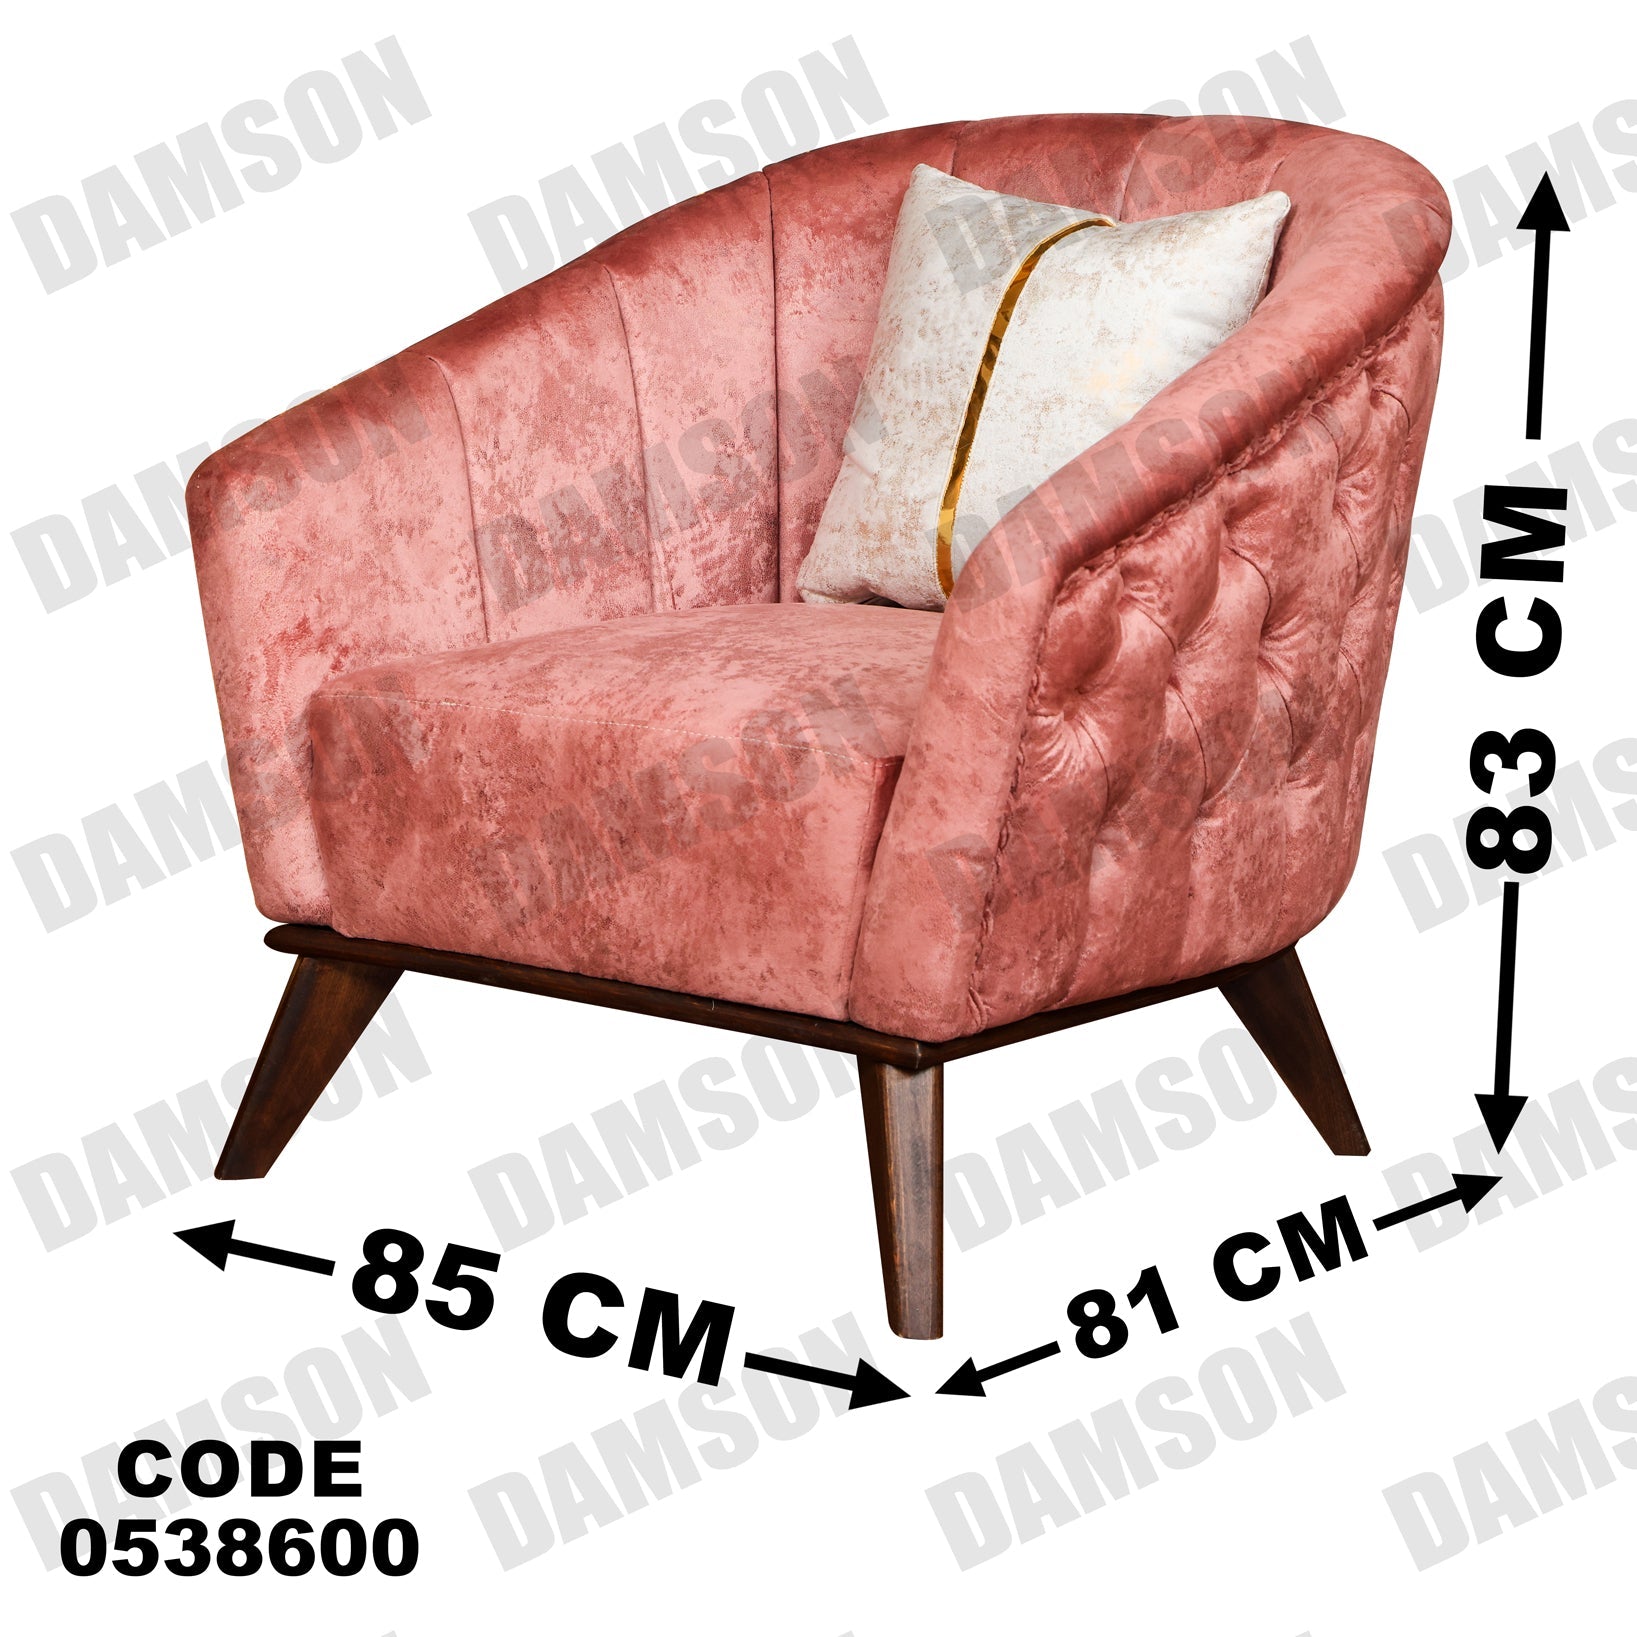 فوتية 1-386 - Damson Furnitureفوتية 1-386